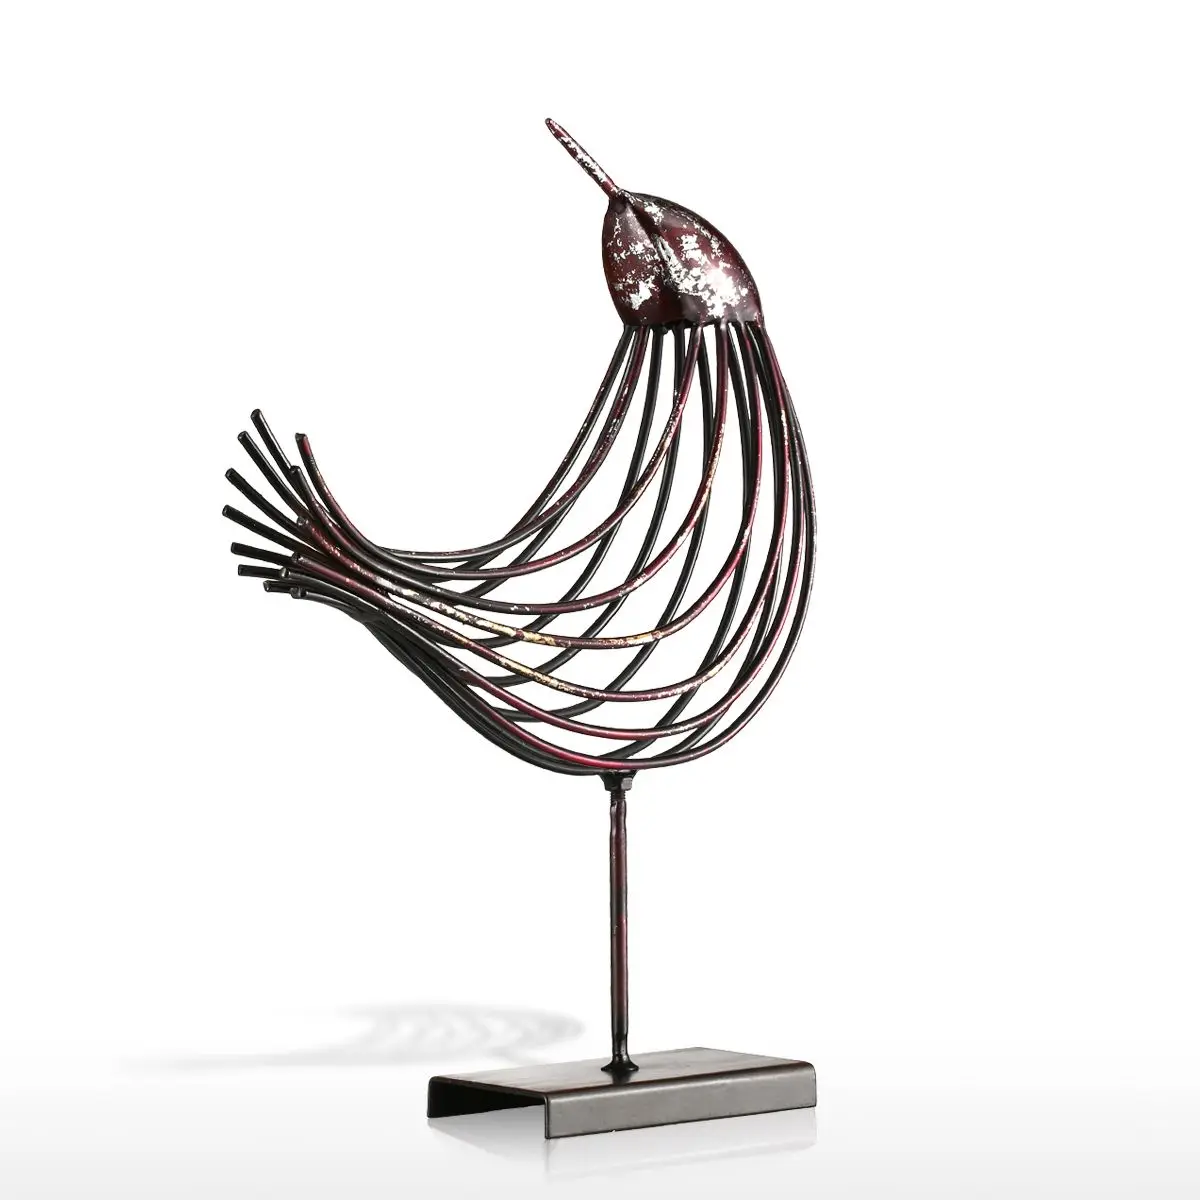 Tooarts железная проволока птица металлическая скульптура чудесная скульптура птица Современная работа подарок украшение дома